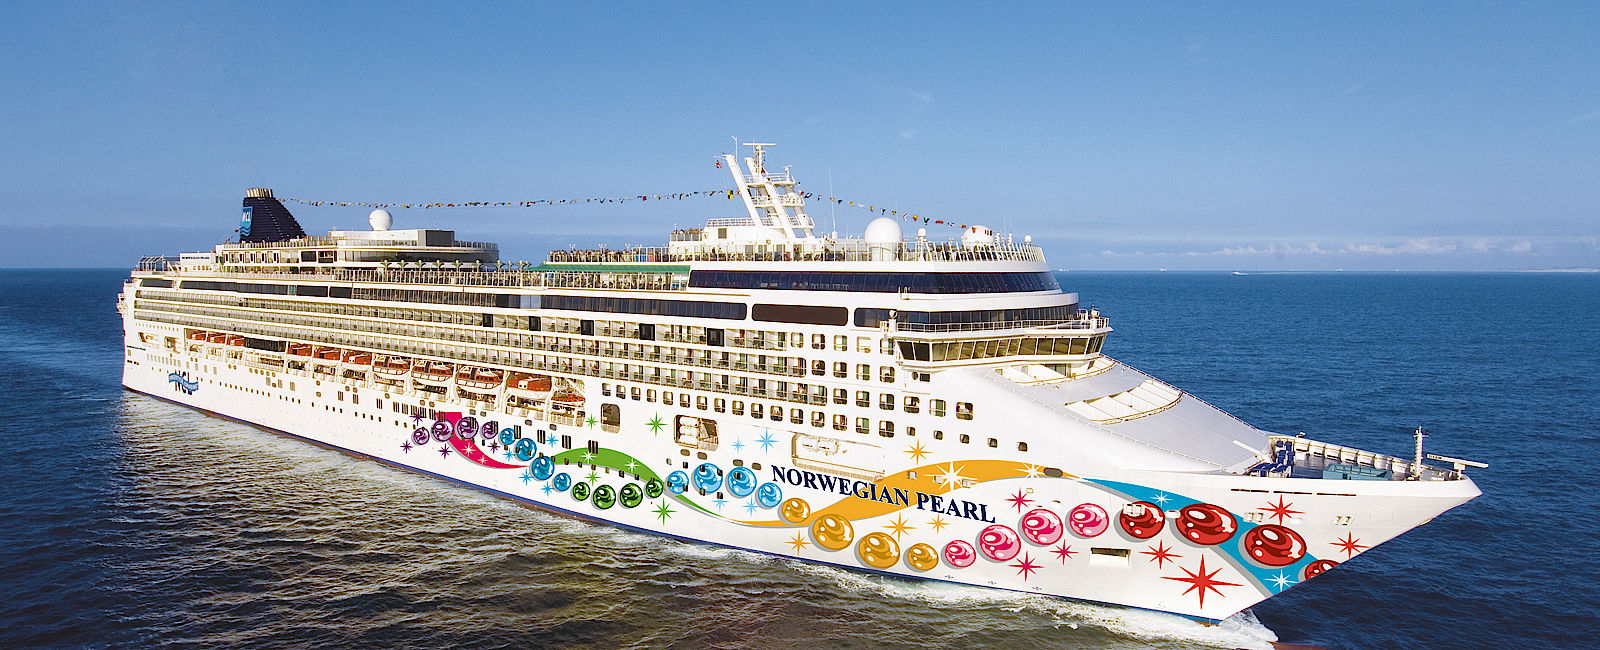 KREUZFAHRT NEWS
 Norwegian Cruise Line mit neuen Ausflügen  
